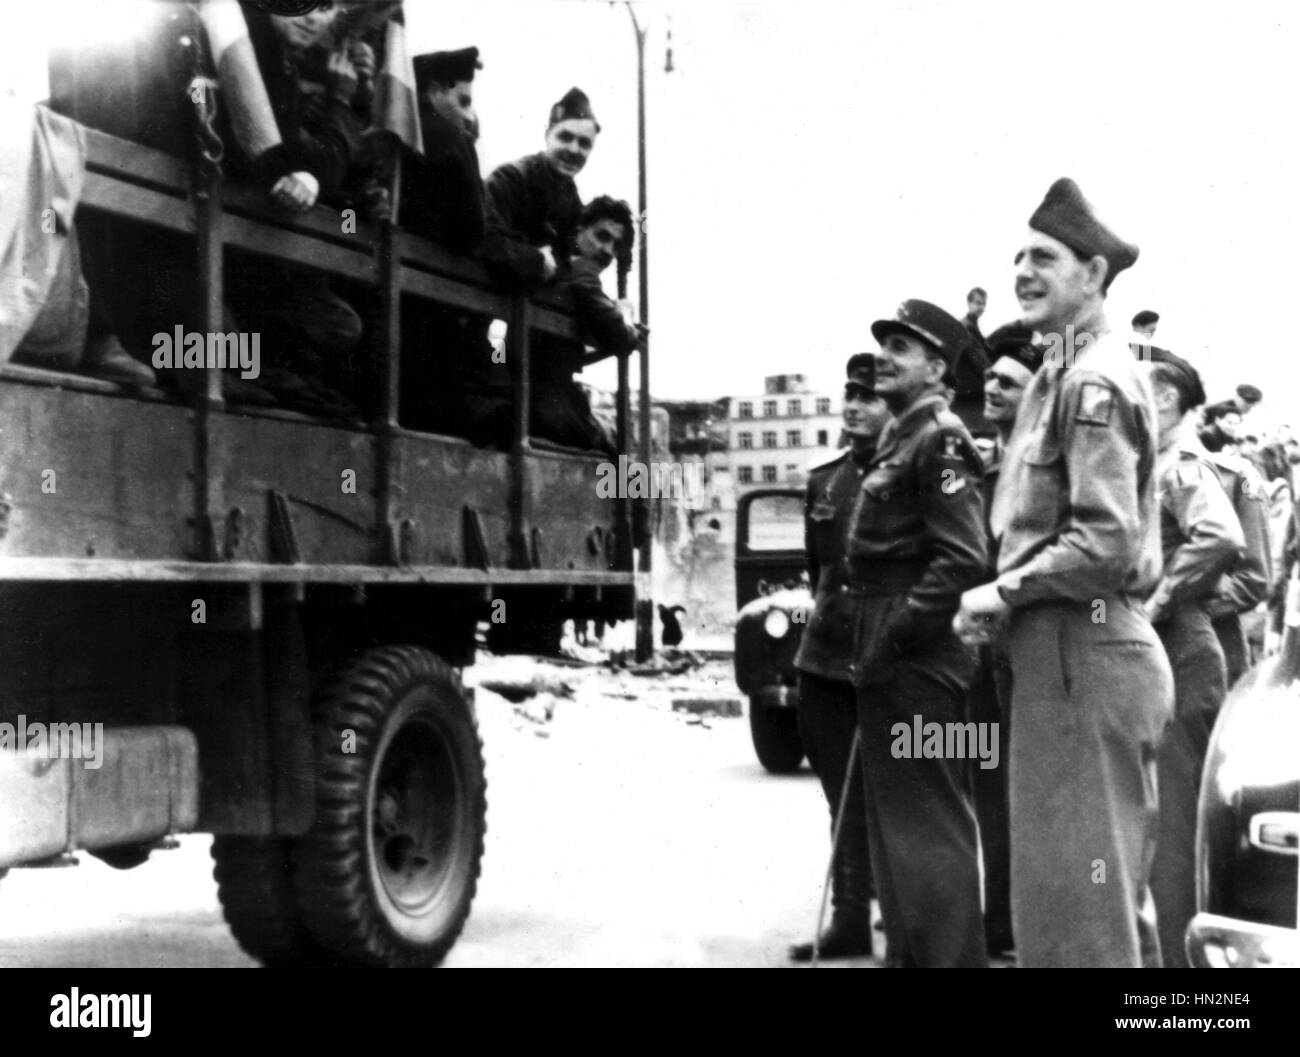 Le Général de Lattre de Tassigny et ses troupes à Berlin Mai 1945 Allemagne - Seconde Guerre mondiale Banque D'Images